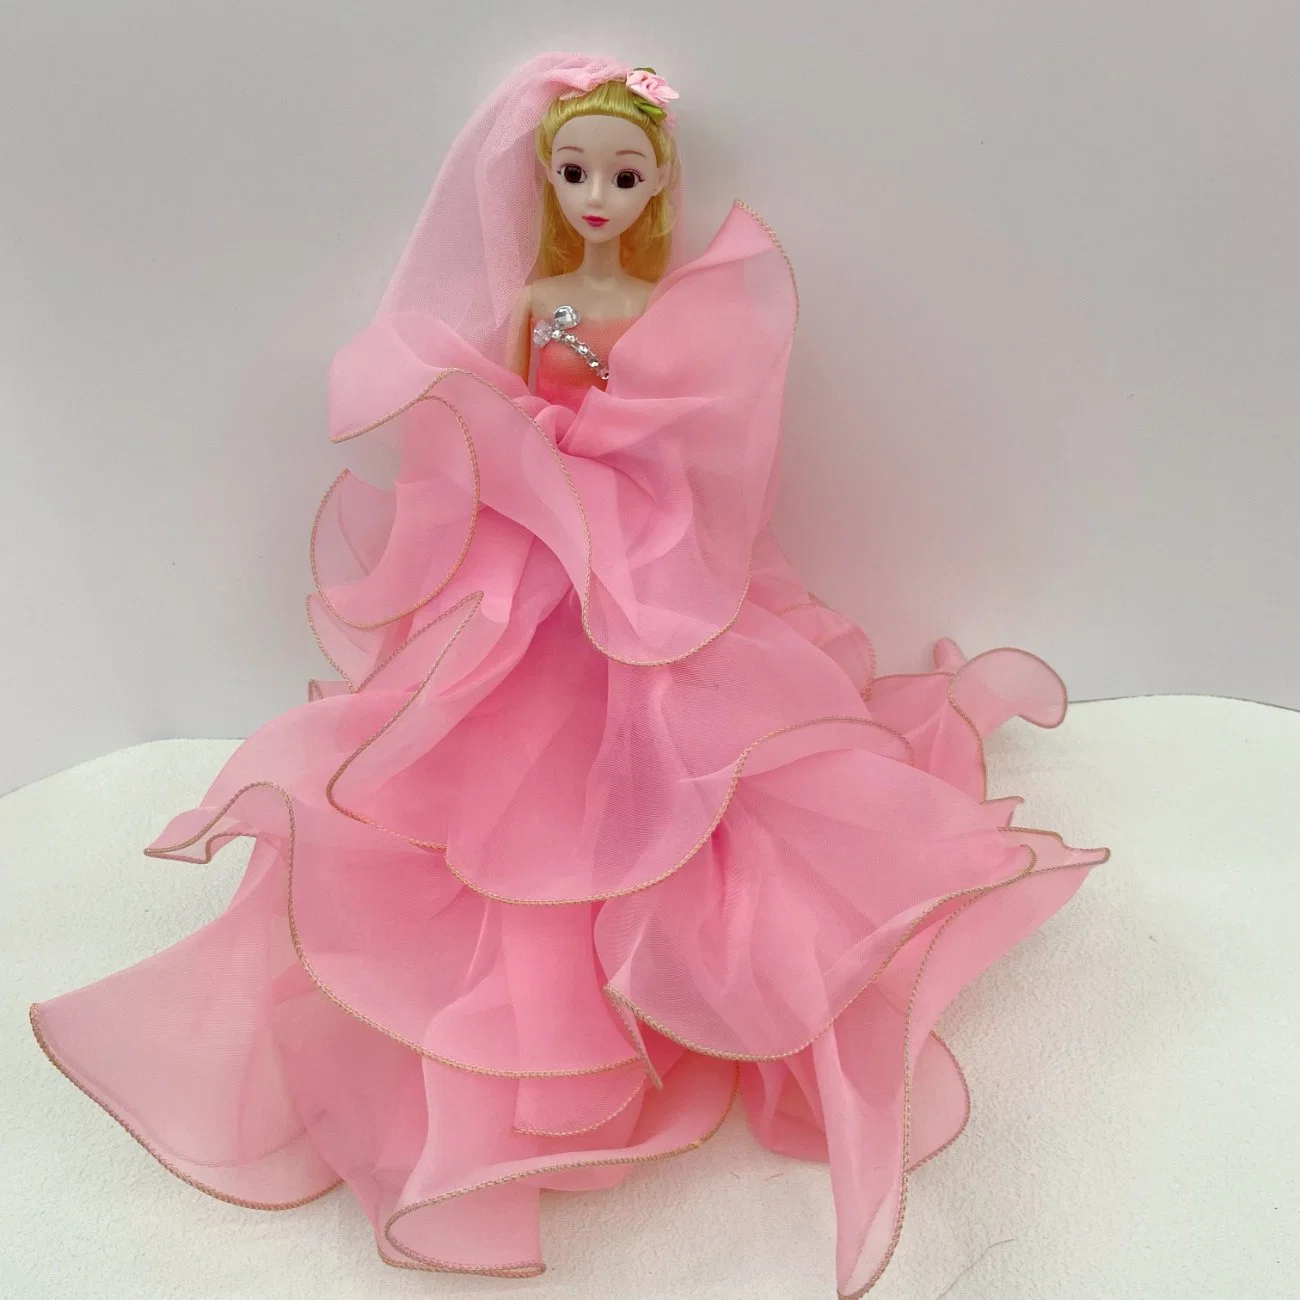 Großhandel Mode Barbienes Puppen Prinzessin Mädchen Spielzeug Mini Puppe oder Dress up Kleidung Accessoires Princessmusik und Gesang